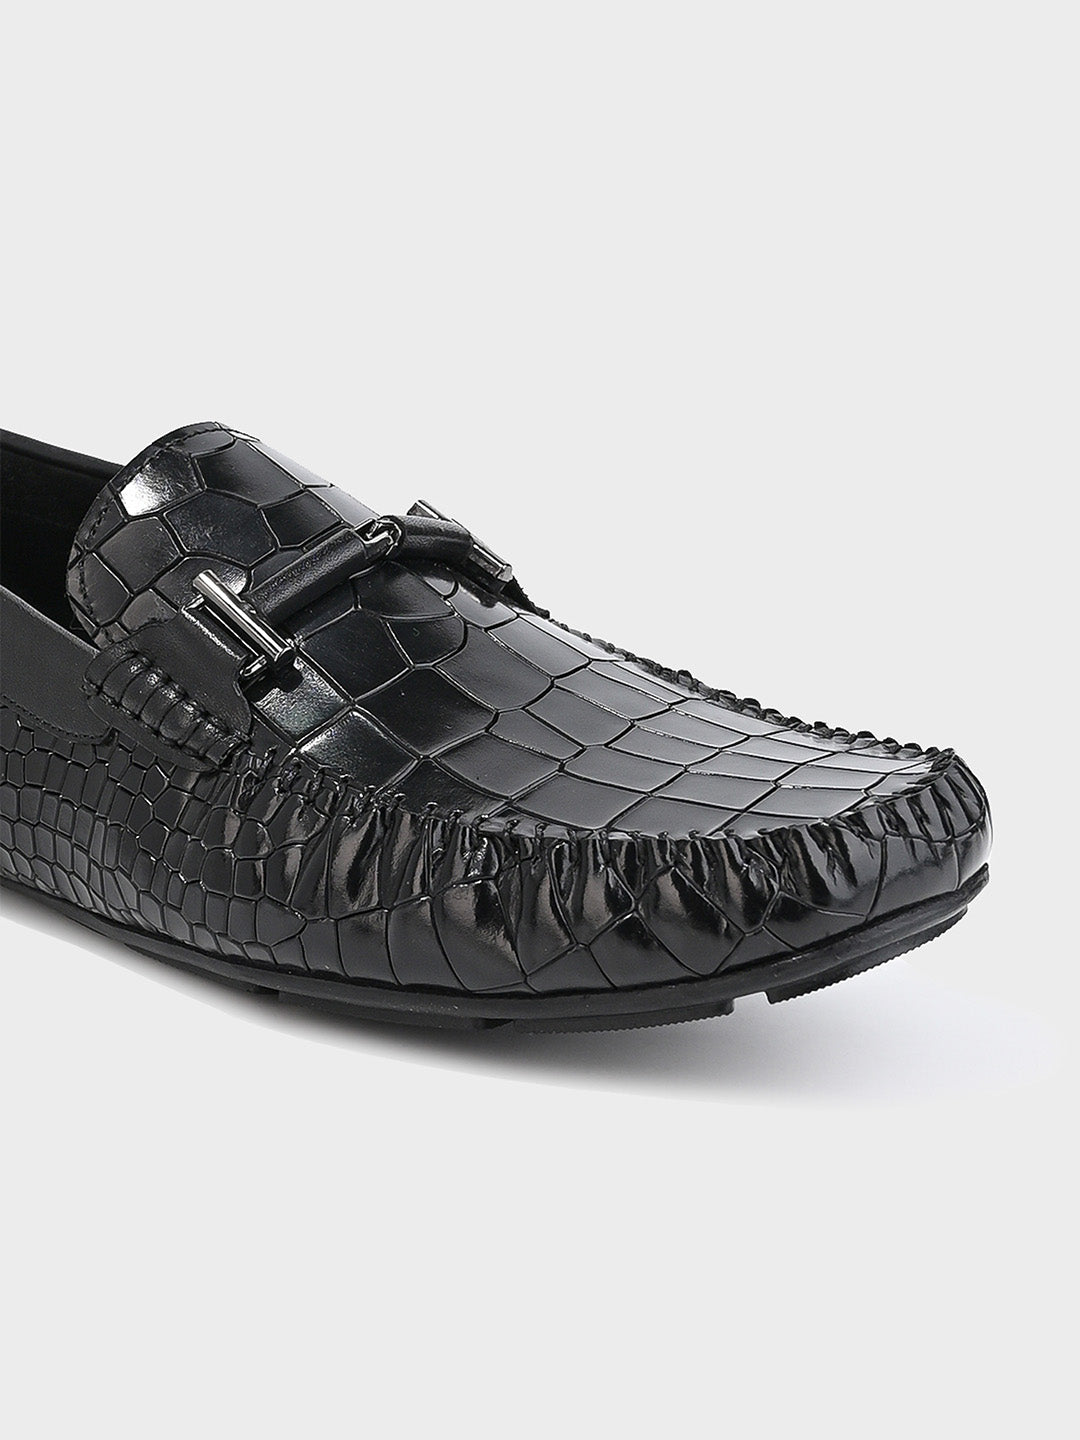 Sleek Black Leather Men's Slip-On Loafer Shoes